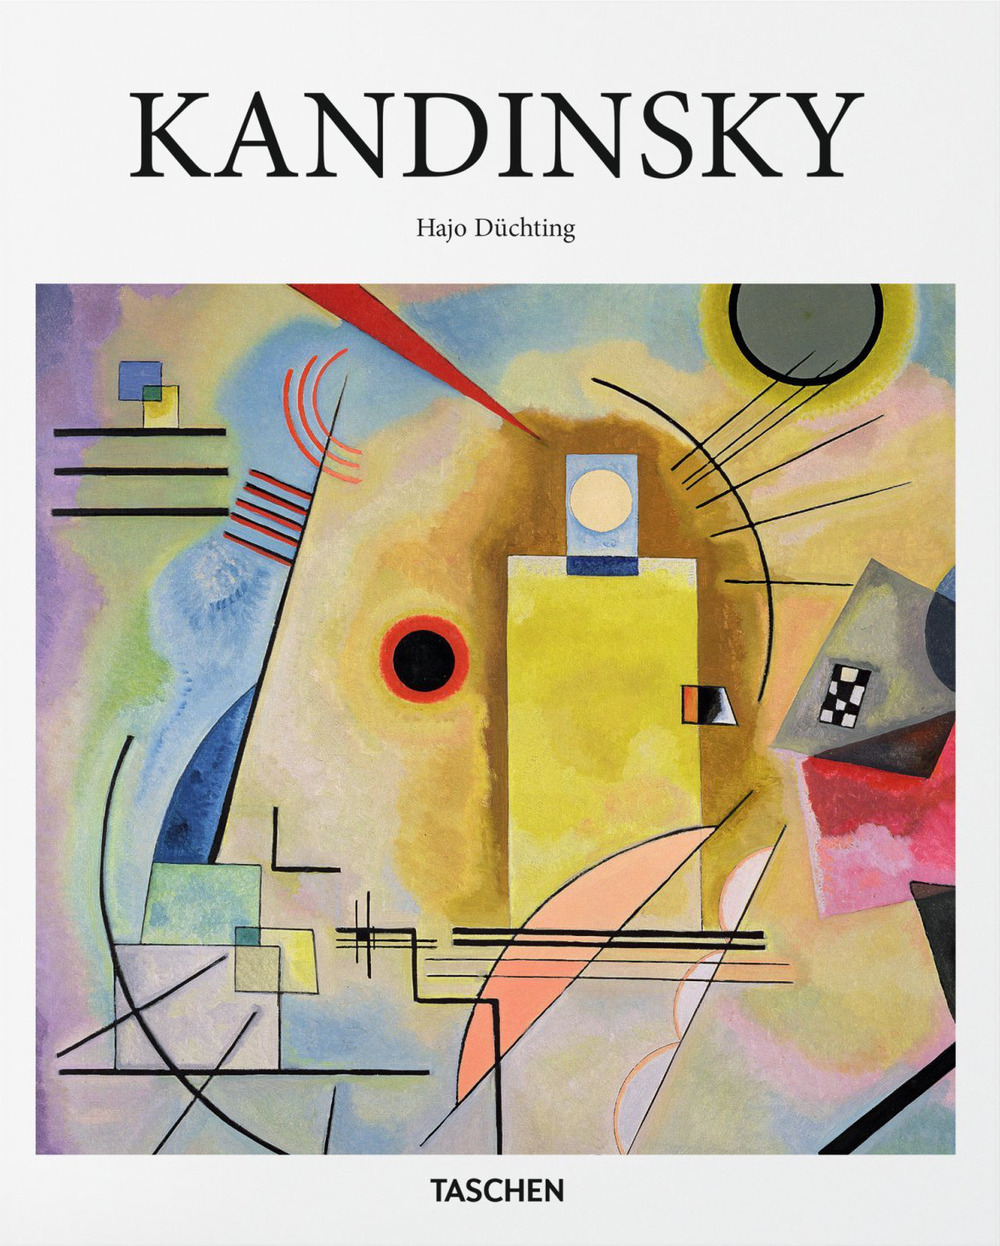 Kandinsky. Ediz. inglese